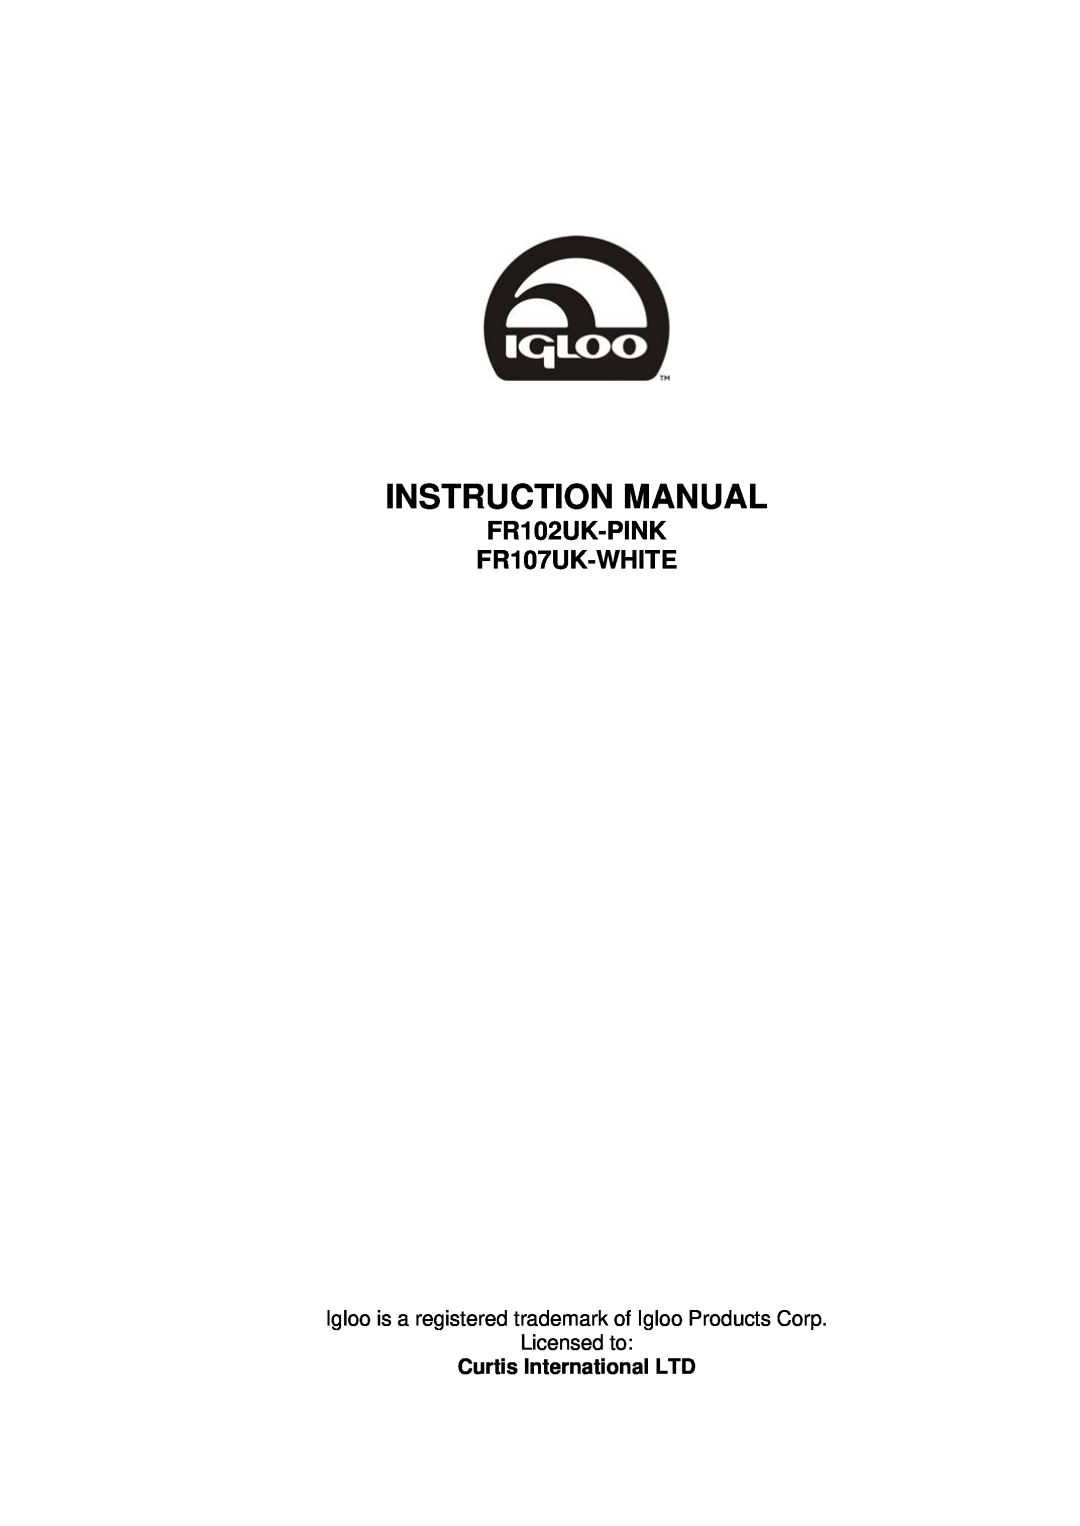 Igloo instruction manual FR102UK-PINK FR107UK-WHITE 